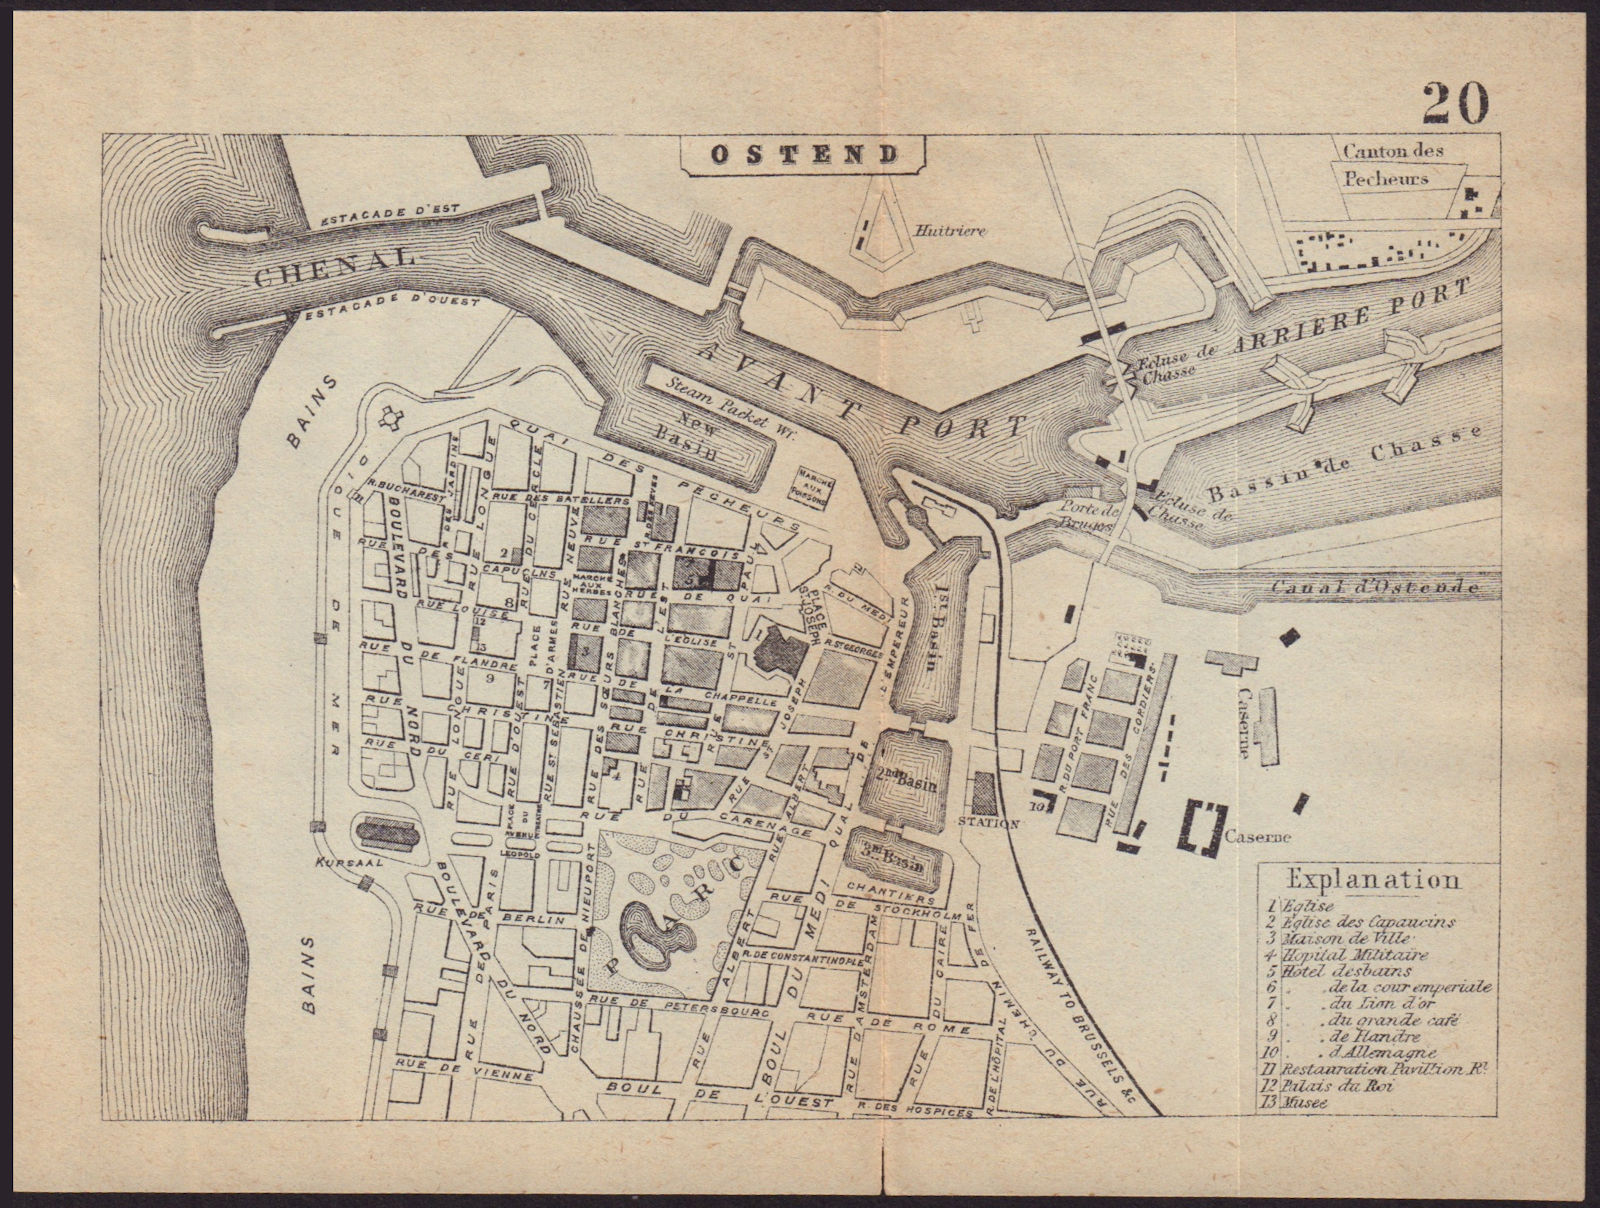 OSTEND OOSTENDE OSTENDE antique town plan city map. Belgium. BRADSHAW 1892